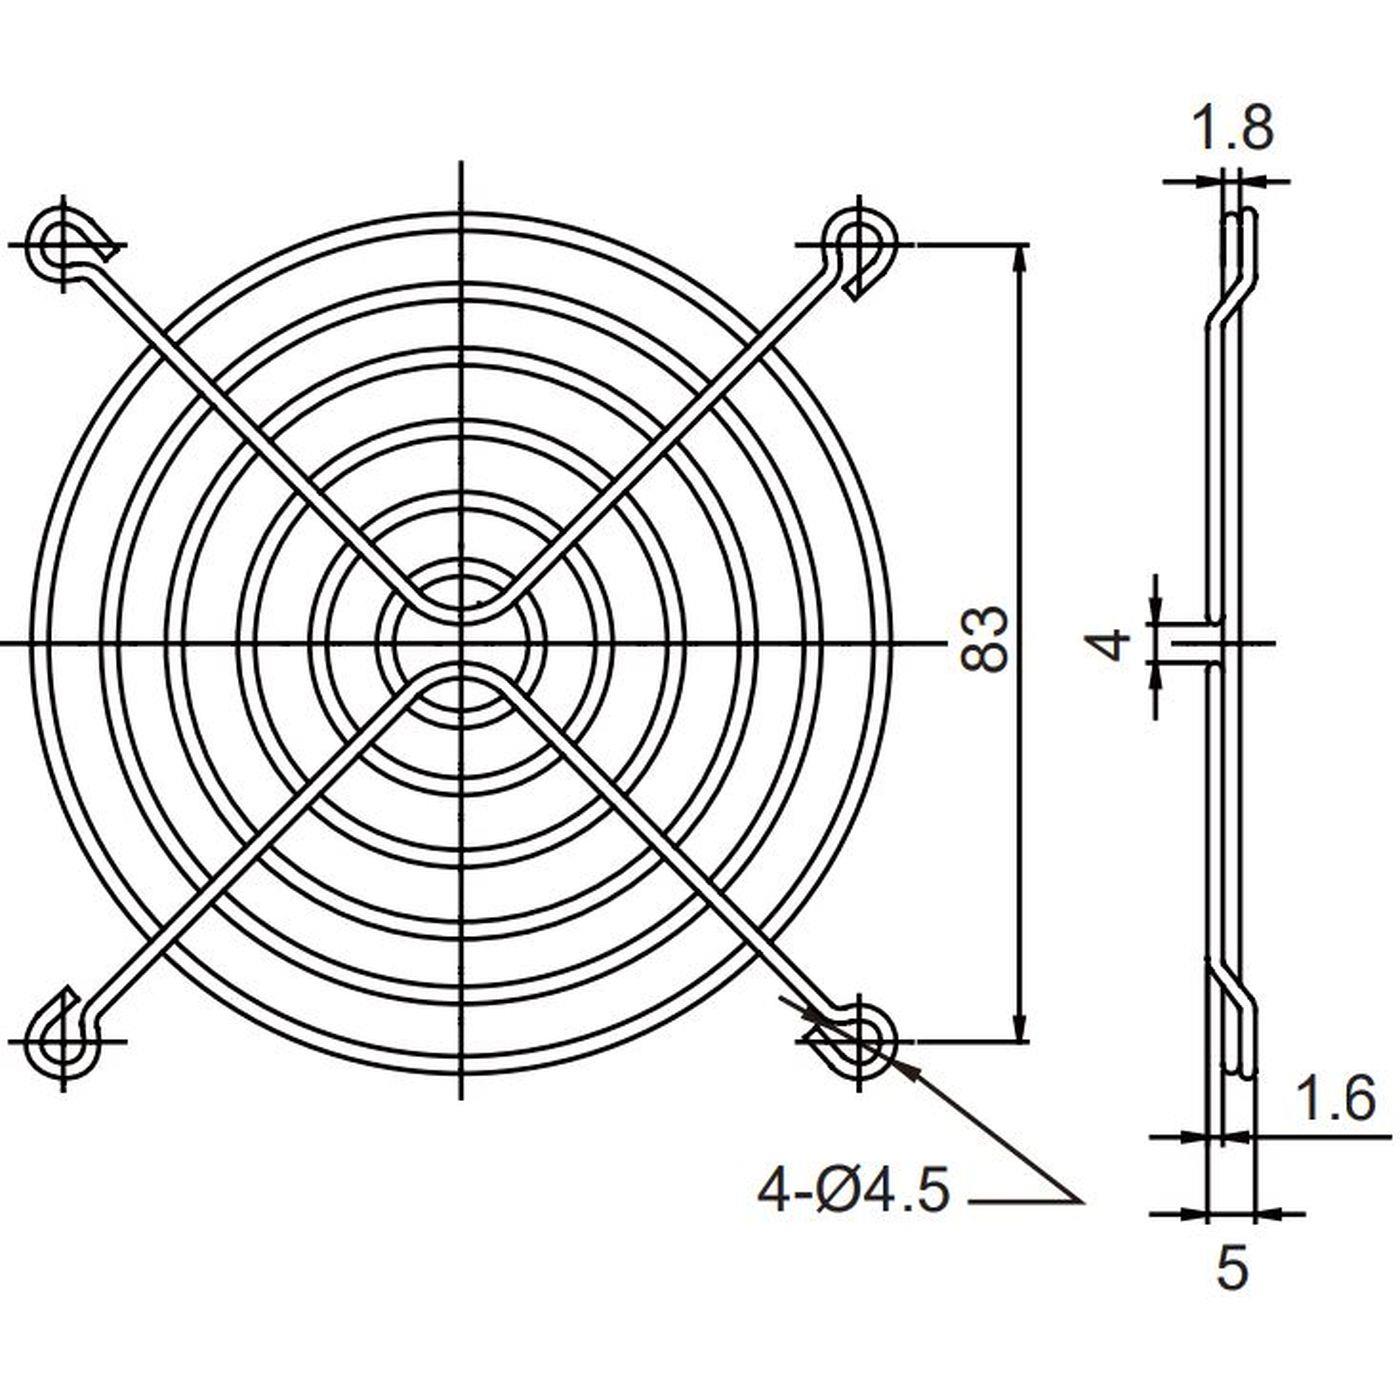 Fan grille 92x92mm for Axial fan 2x92x20mm 92x92x25mm